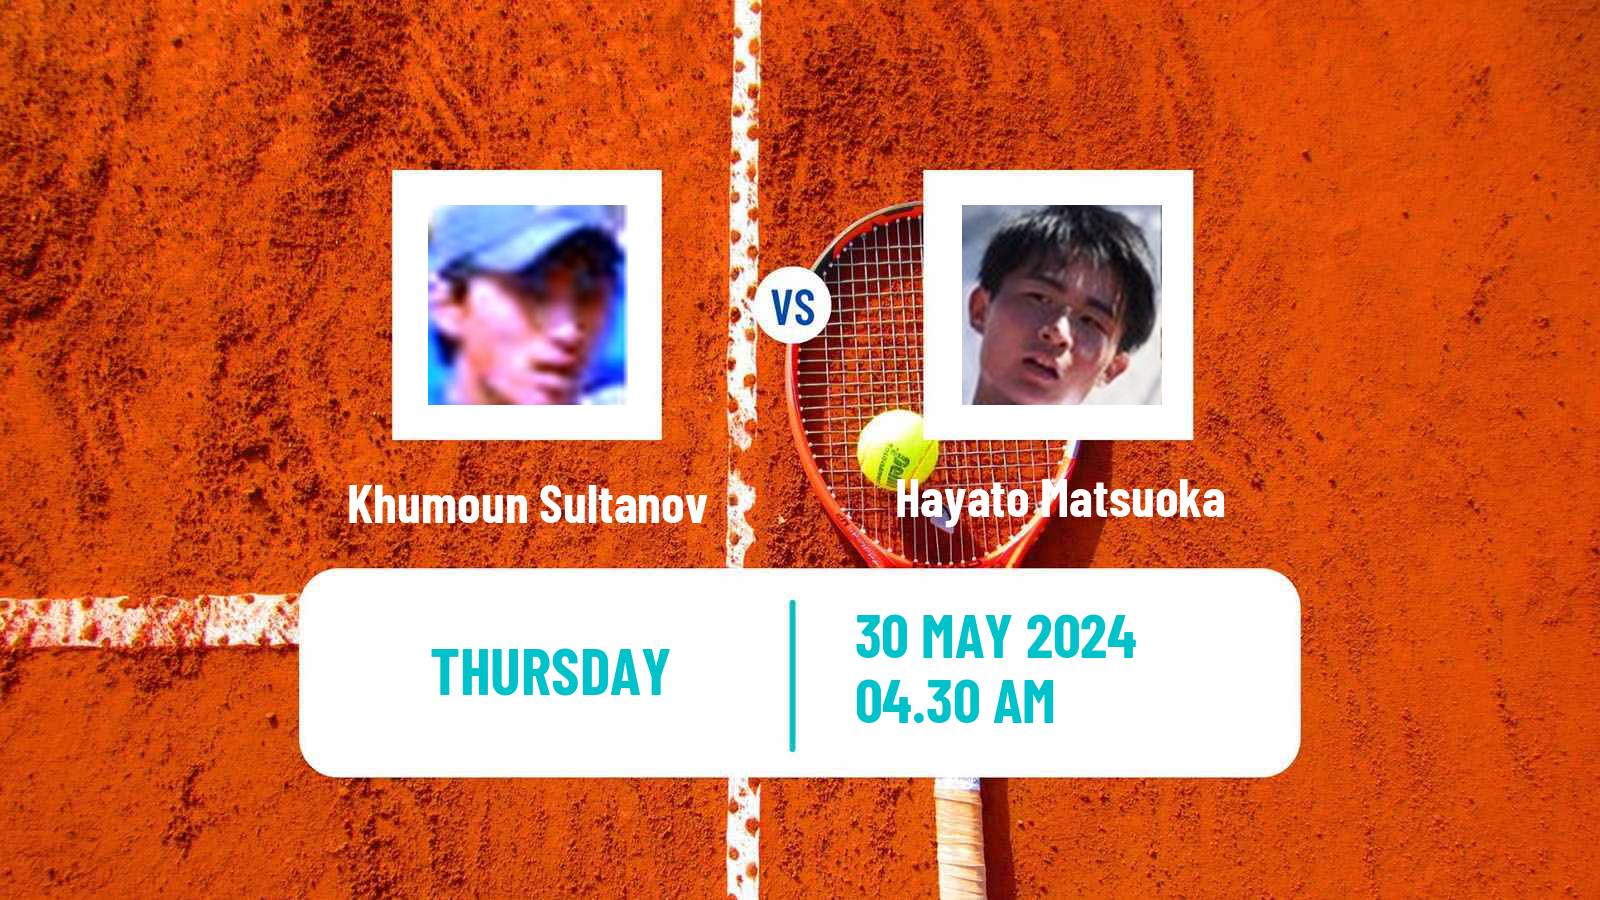 Tennis ITF M15 Kursumlijska Banja 6 Men Khumoun Sultanov - Hayato Matsuoka